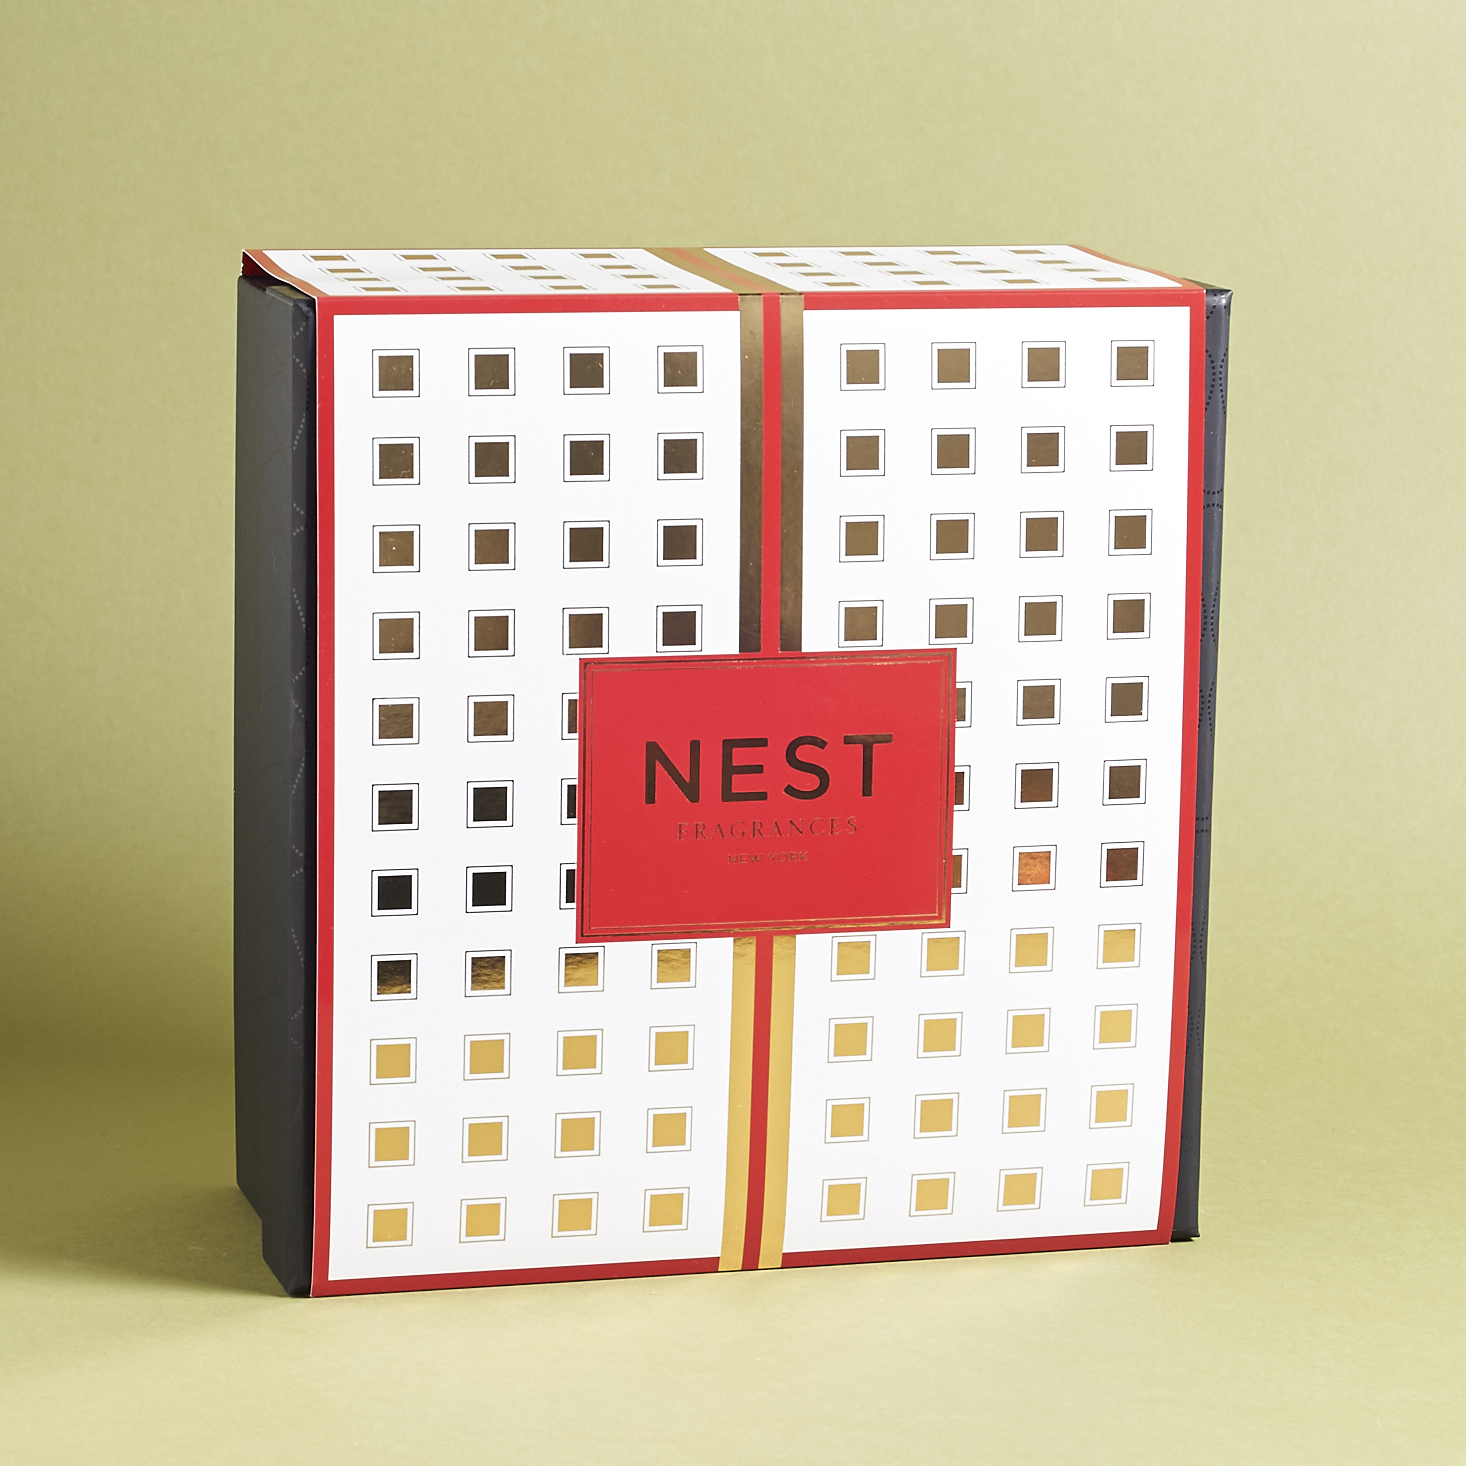 Next by Nest Fragrances Subscription Box Review – Dec 2016